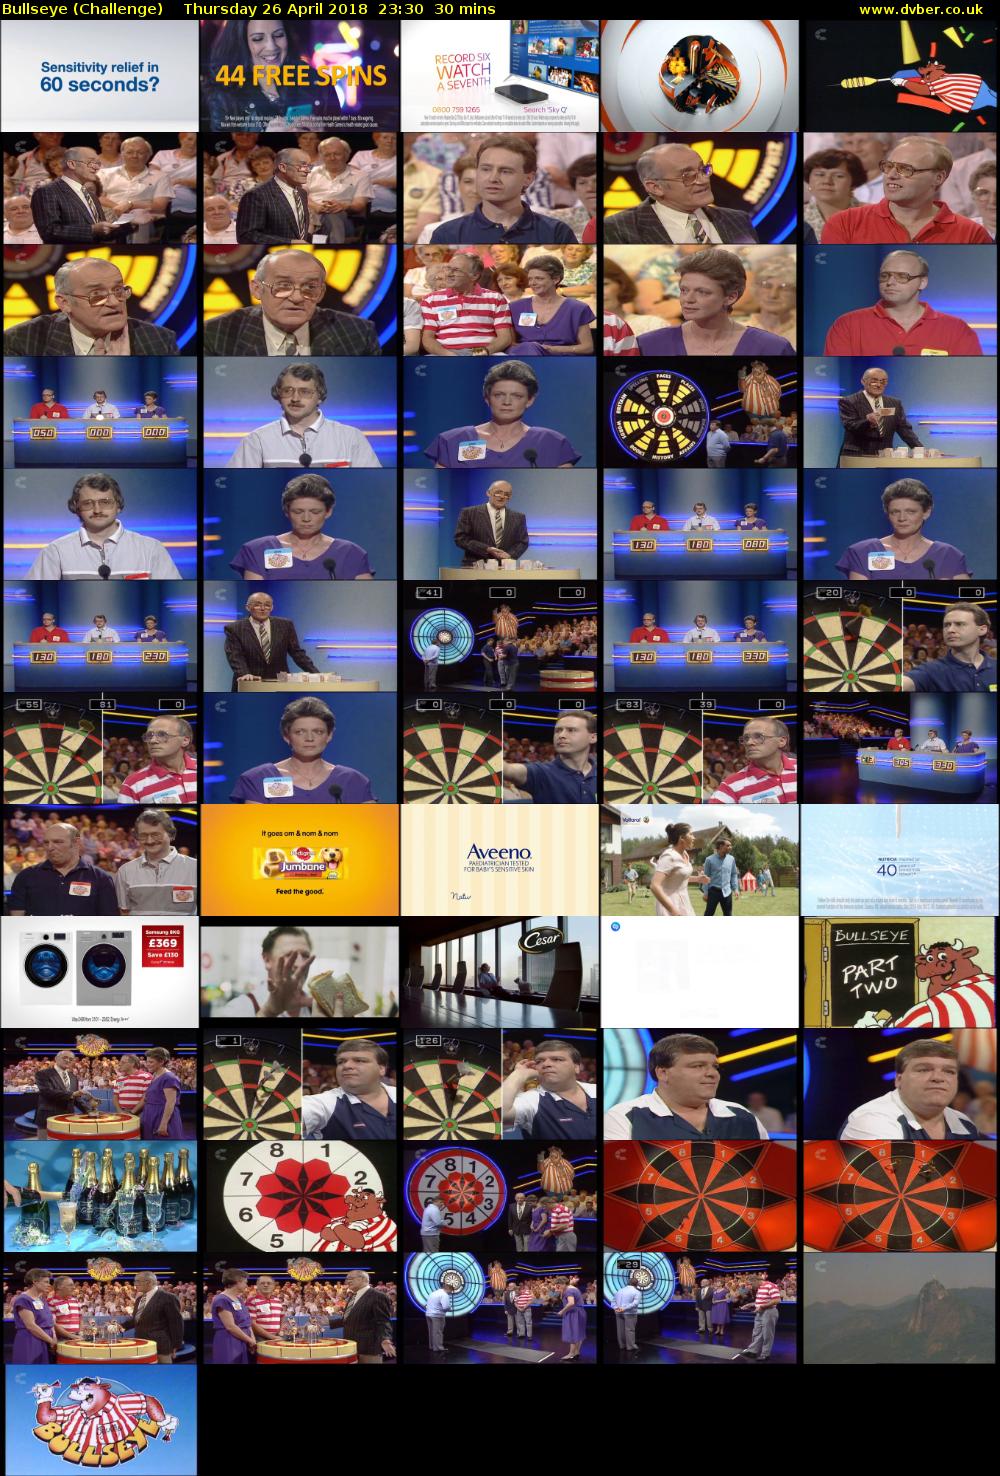 Bullseye (Challenge) Thursday 26 April 2018 23:30 - 00:00